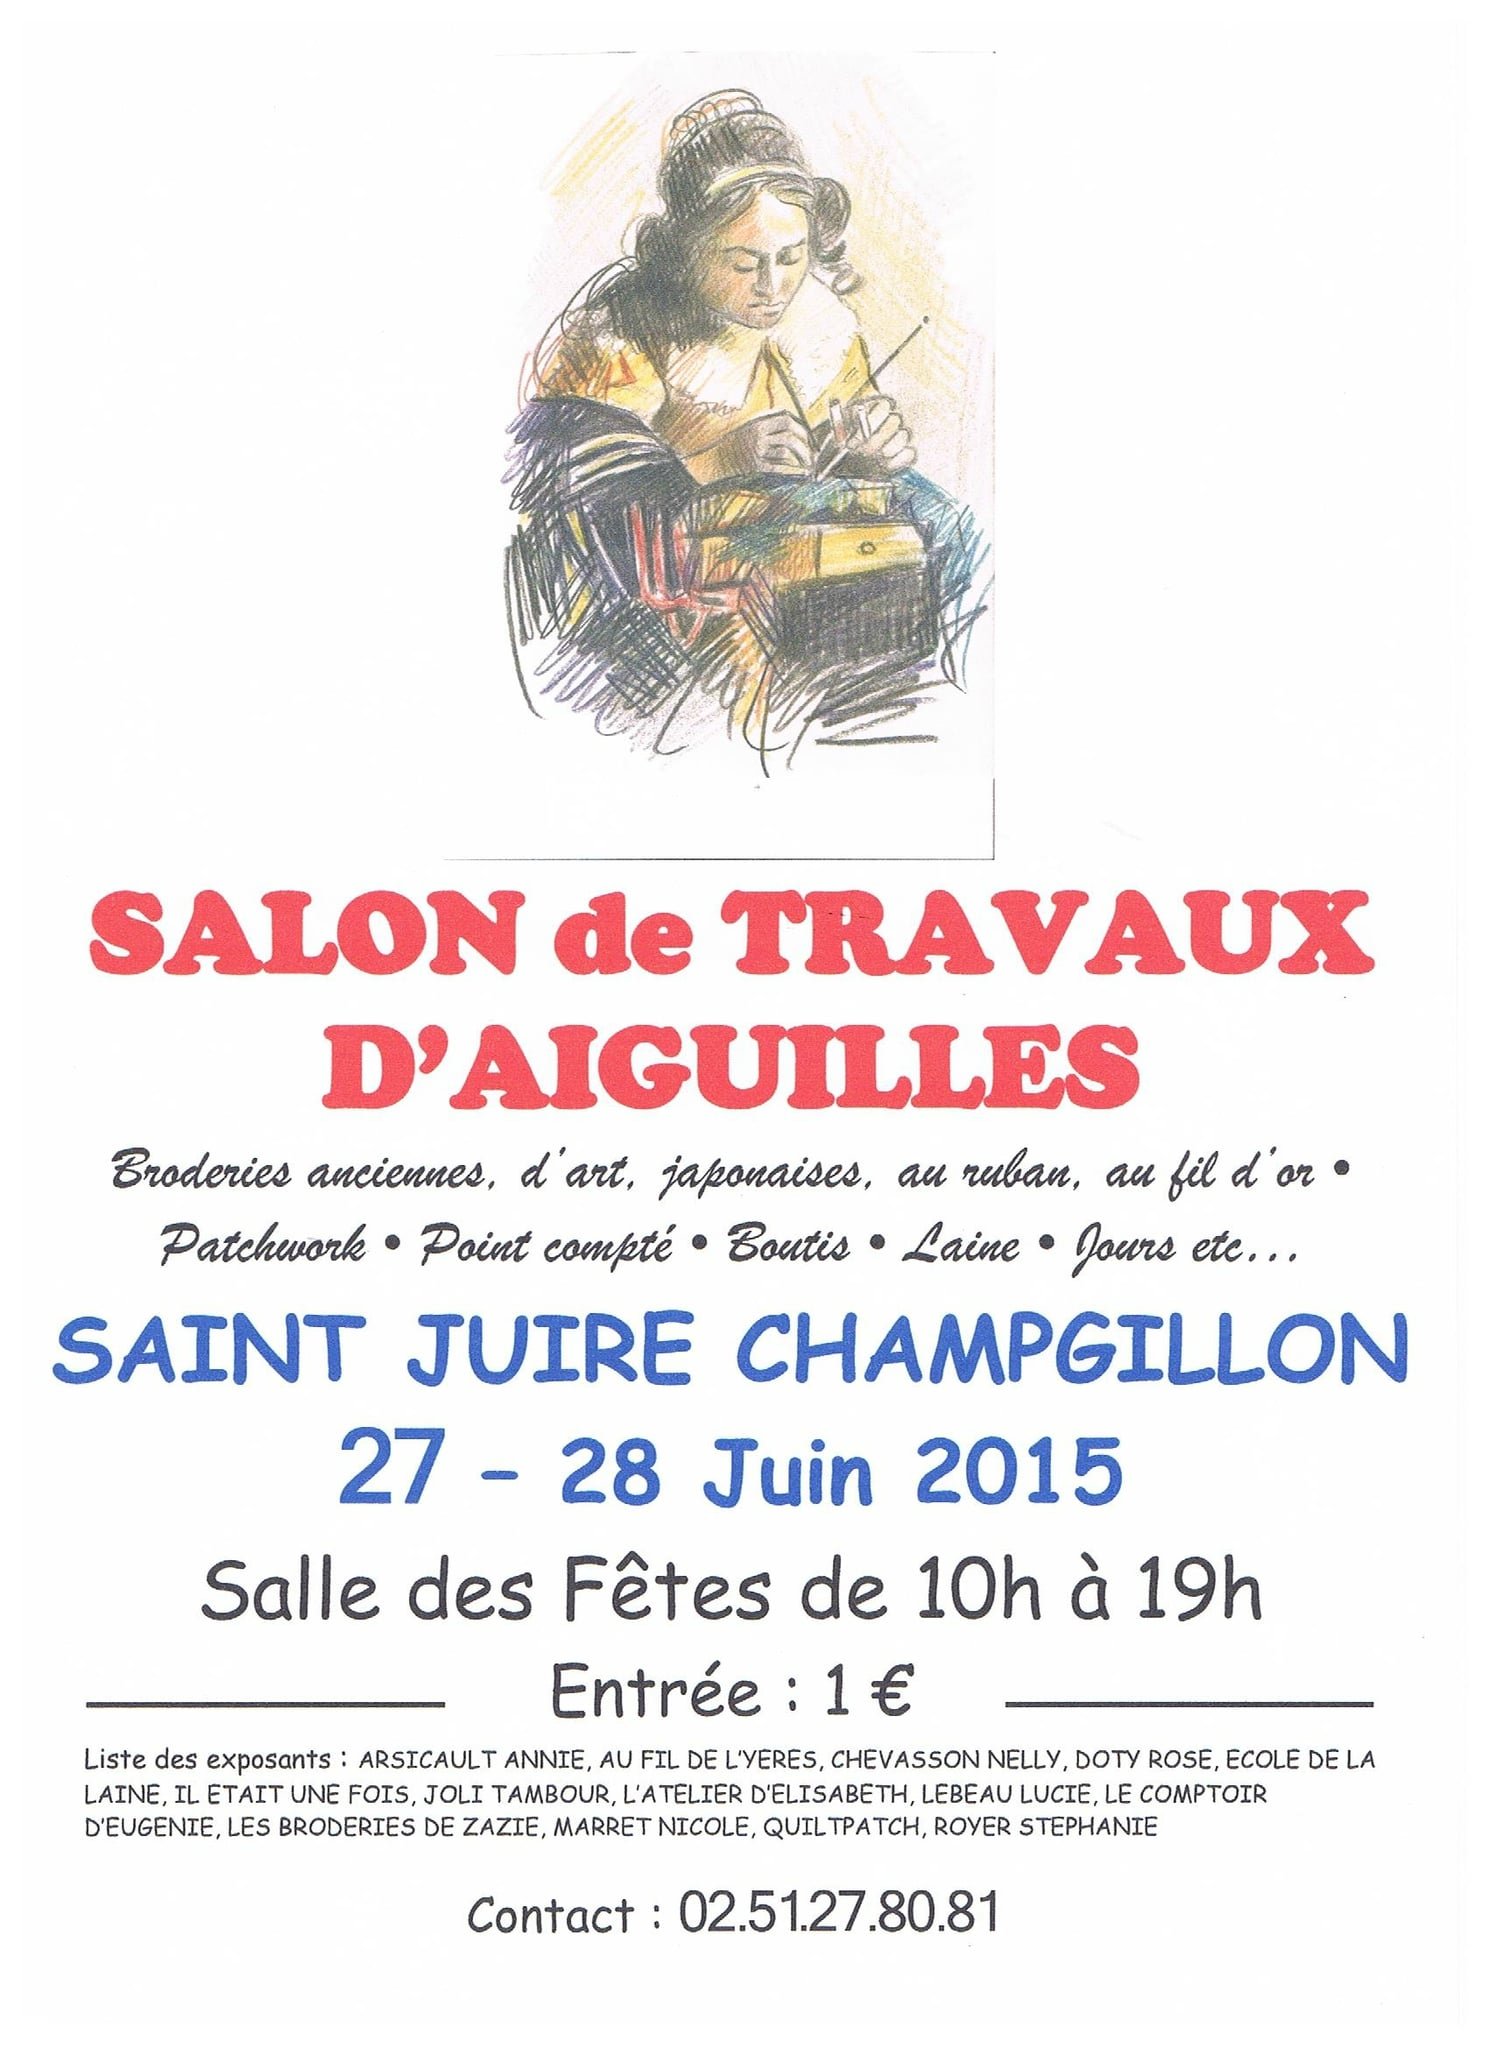 27 et 28 juin 2015 - Salon de travaux d'aiguilles - Saint Juire Champgillon